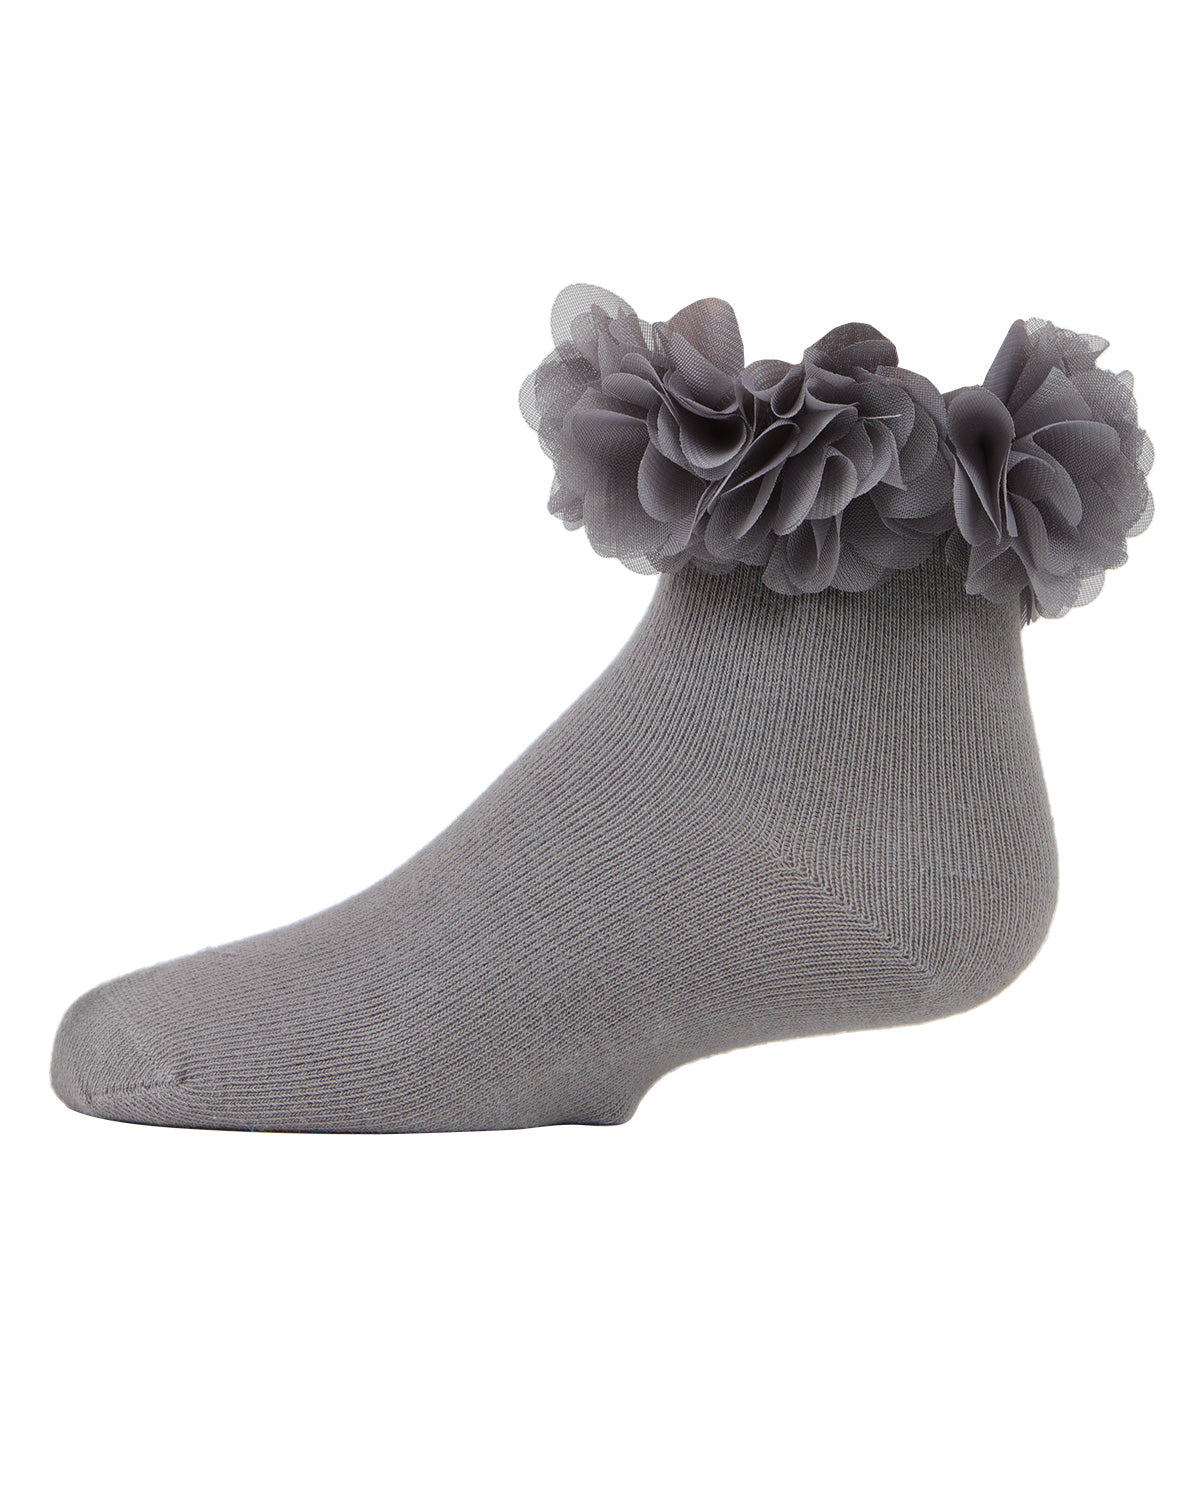 Floral Halo Girls Cotton Blend Anklet Socks